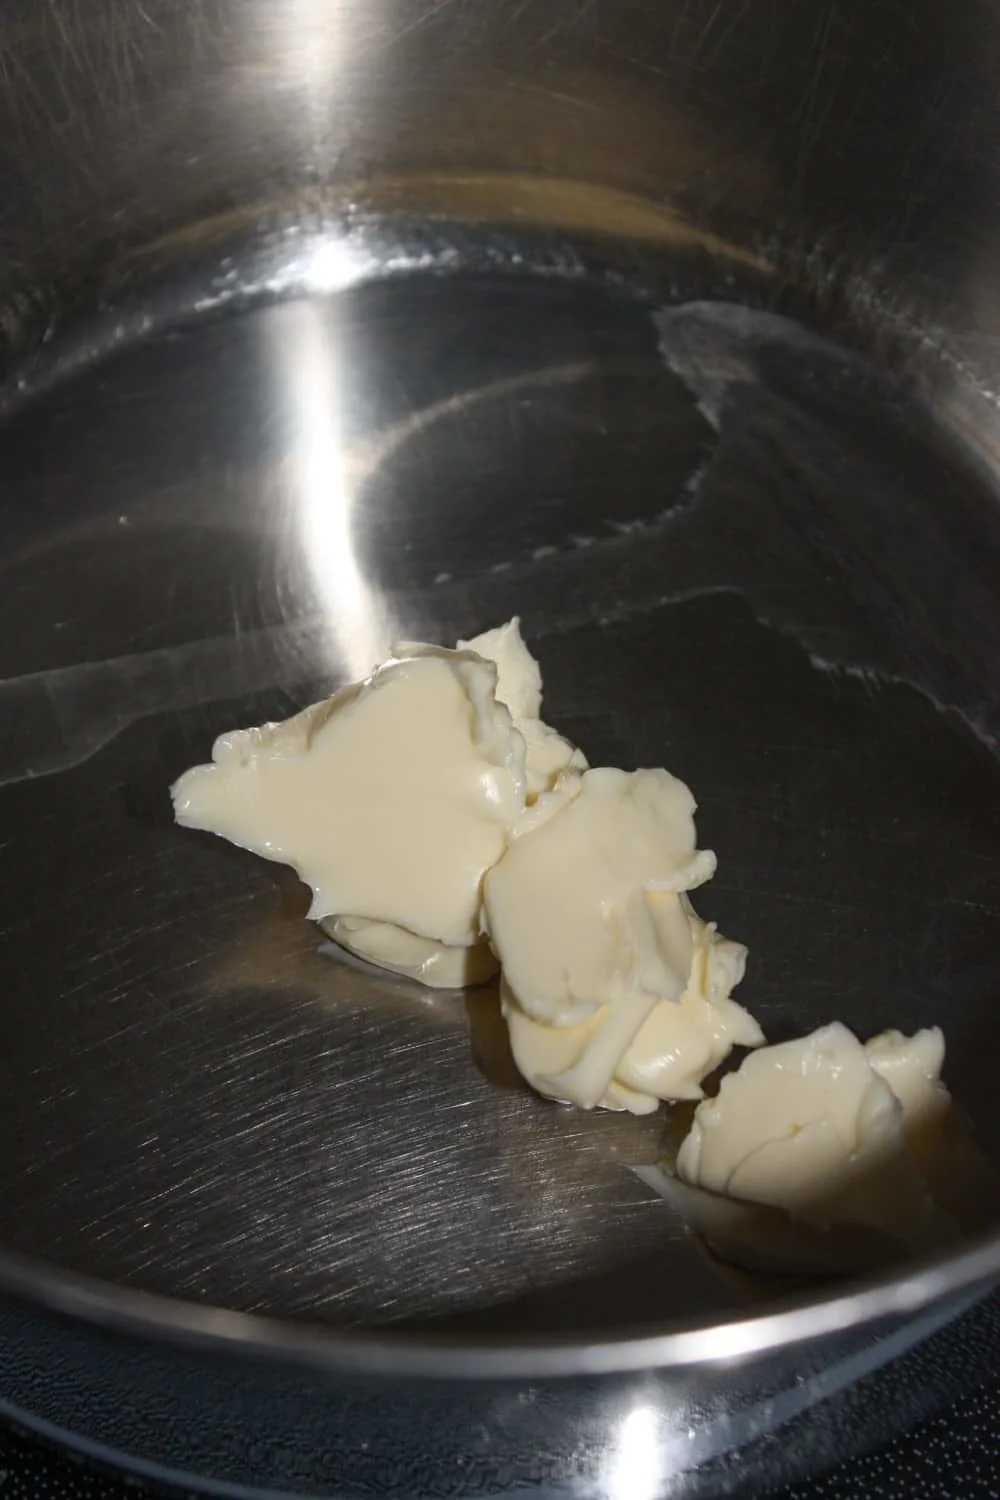 Melting the margarine.